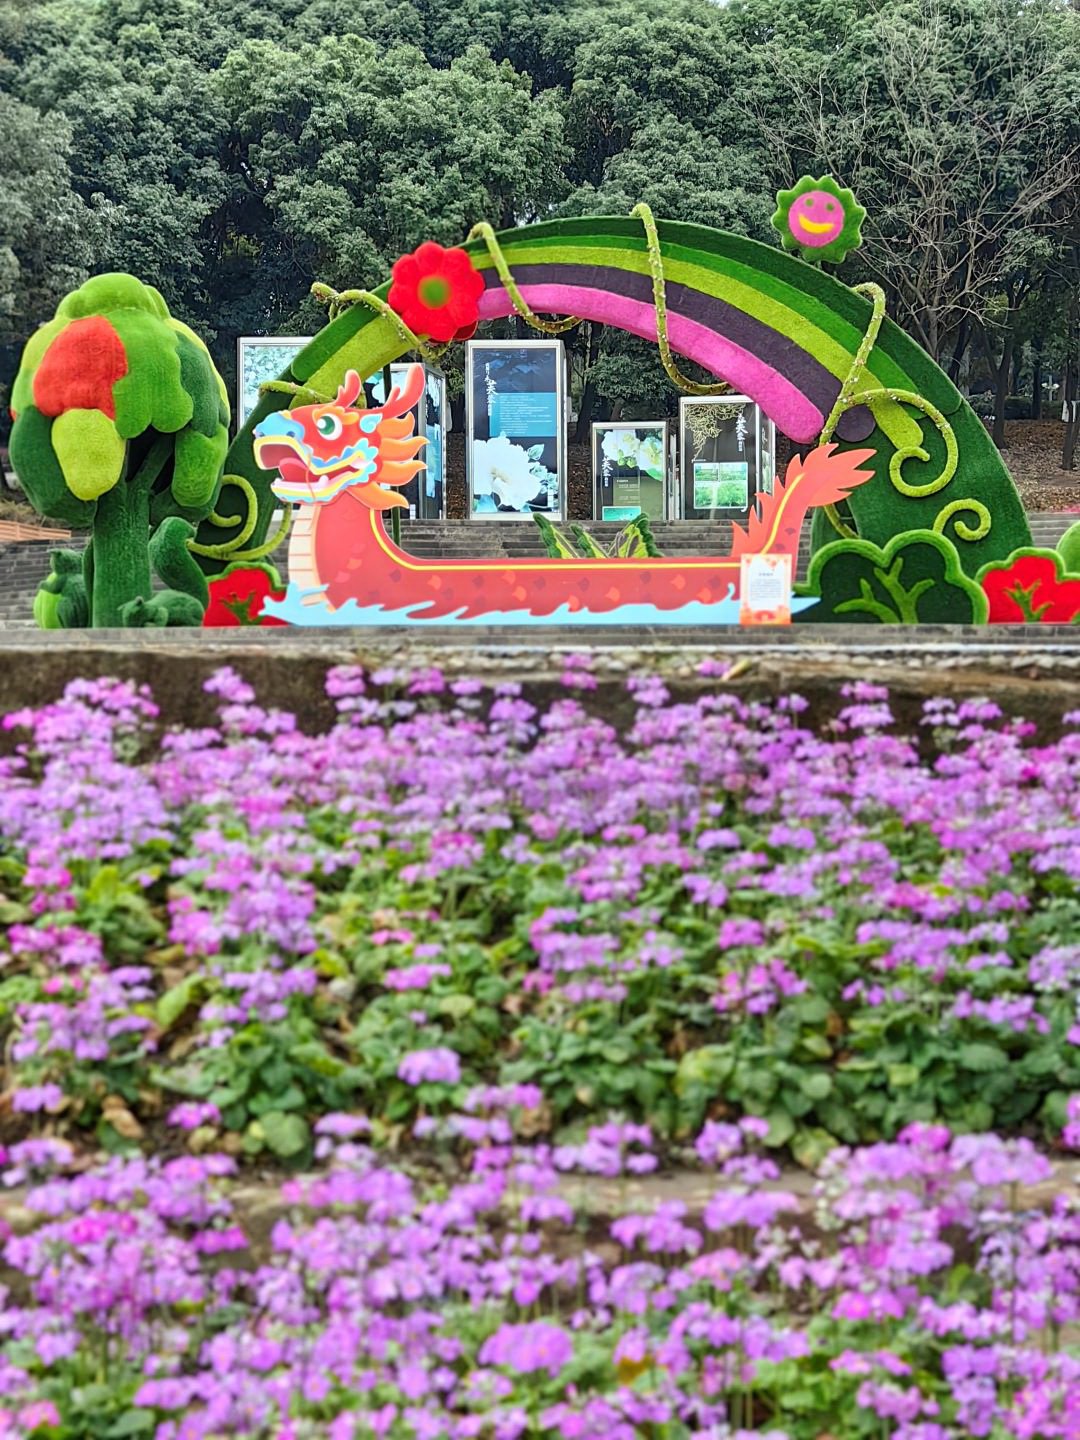 赏早樱	、逛游园
，成都市植物园春节“上新”！